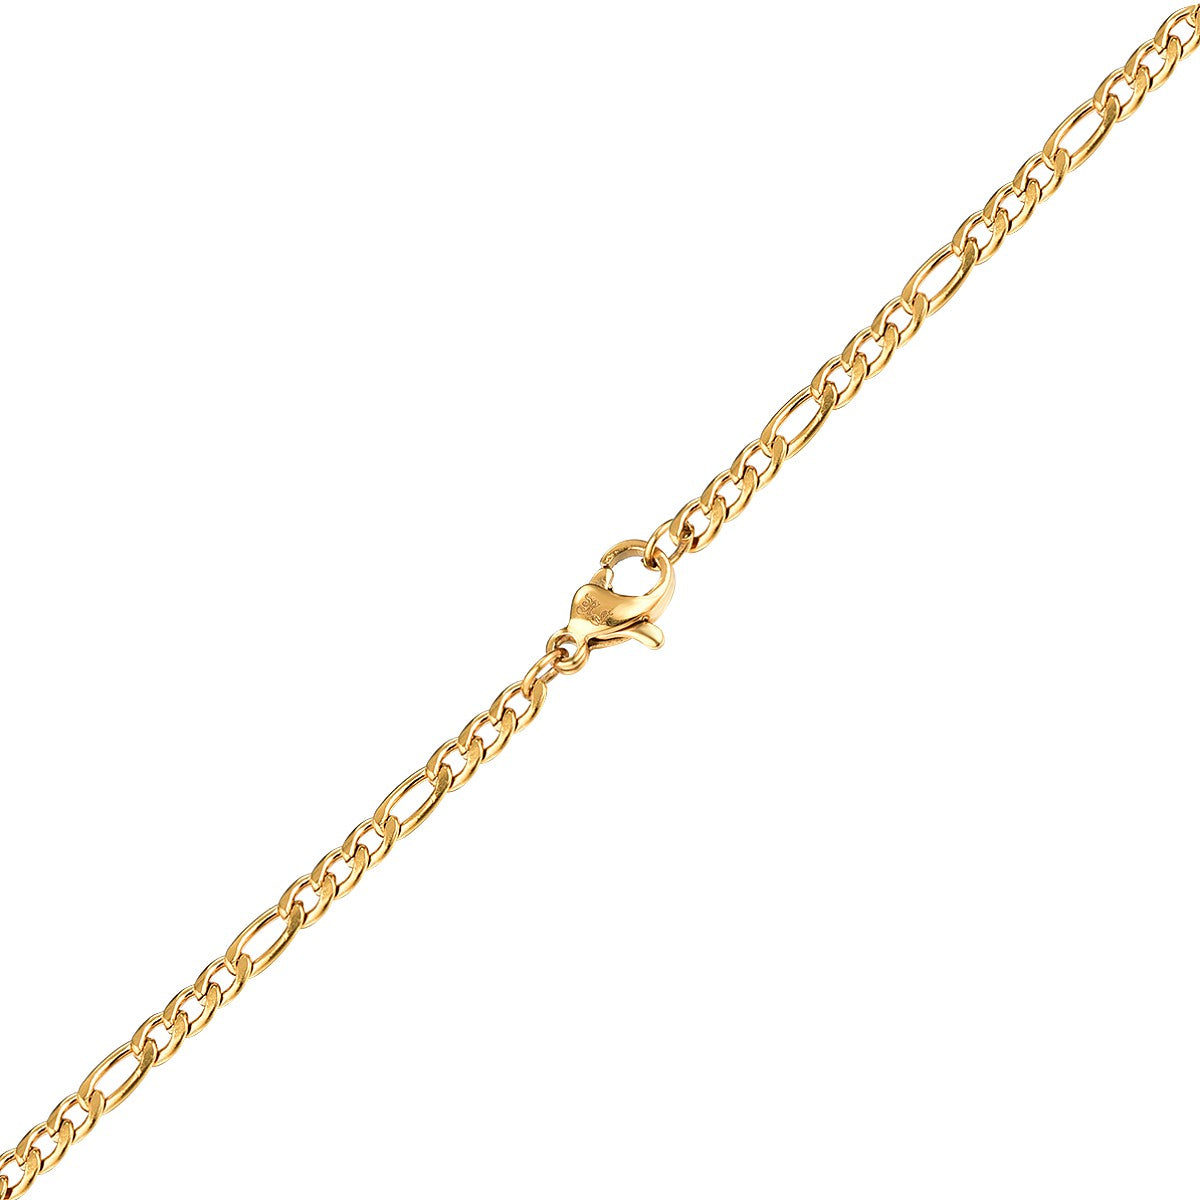 Antique kæde - Guldtonet